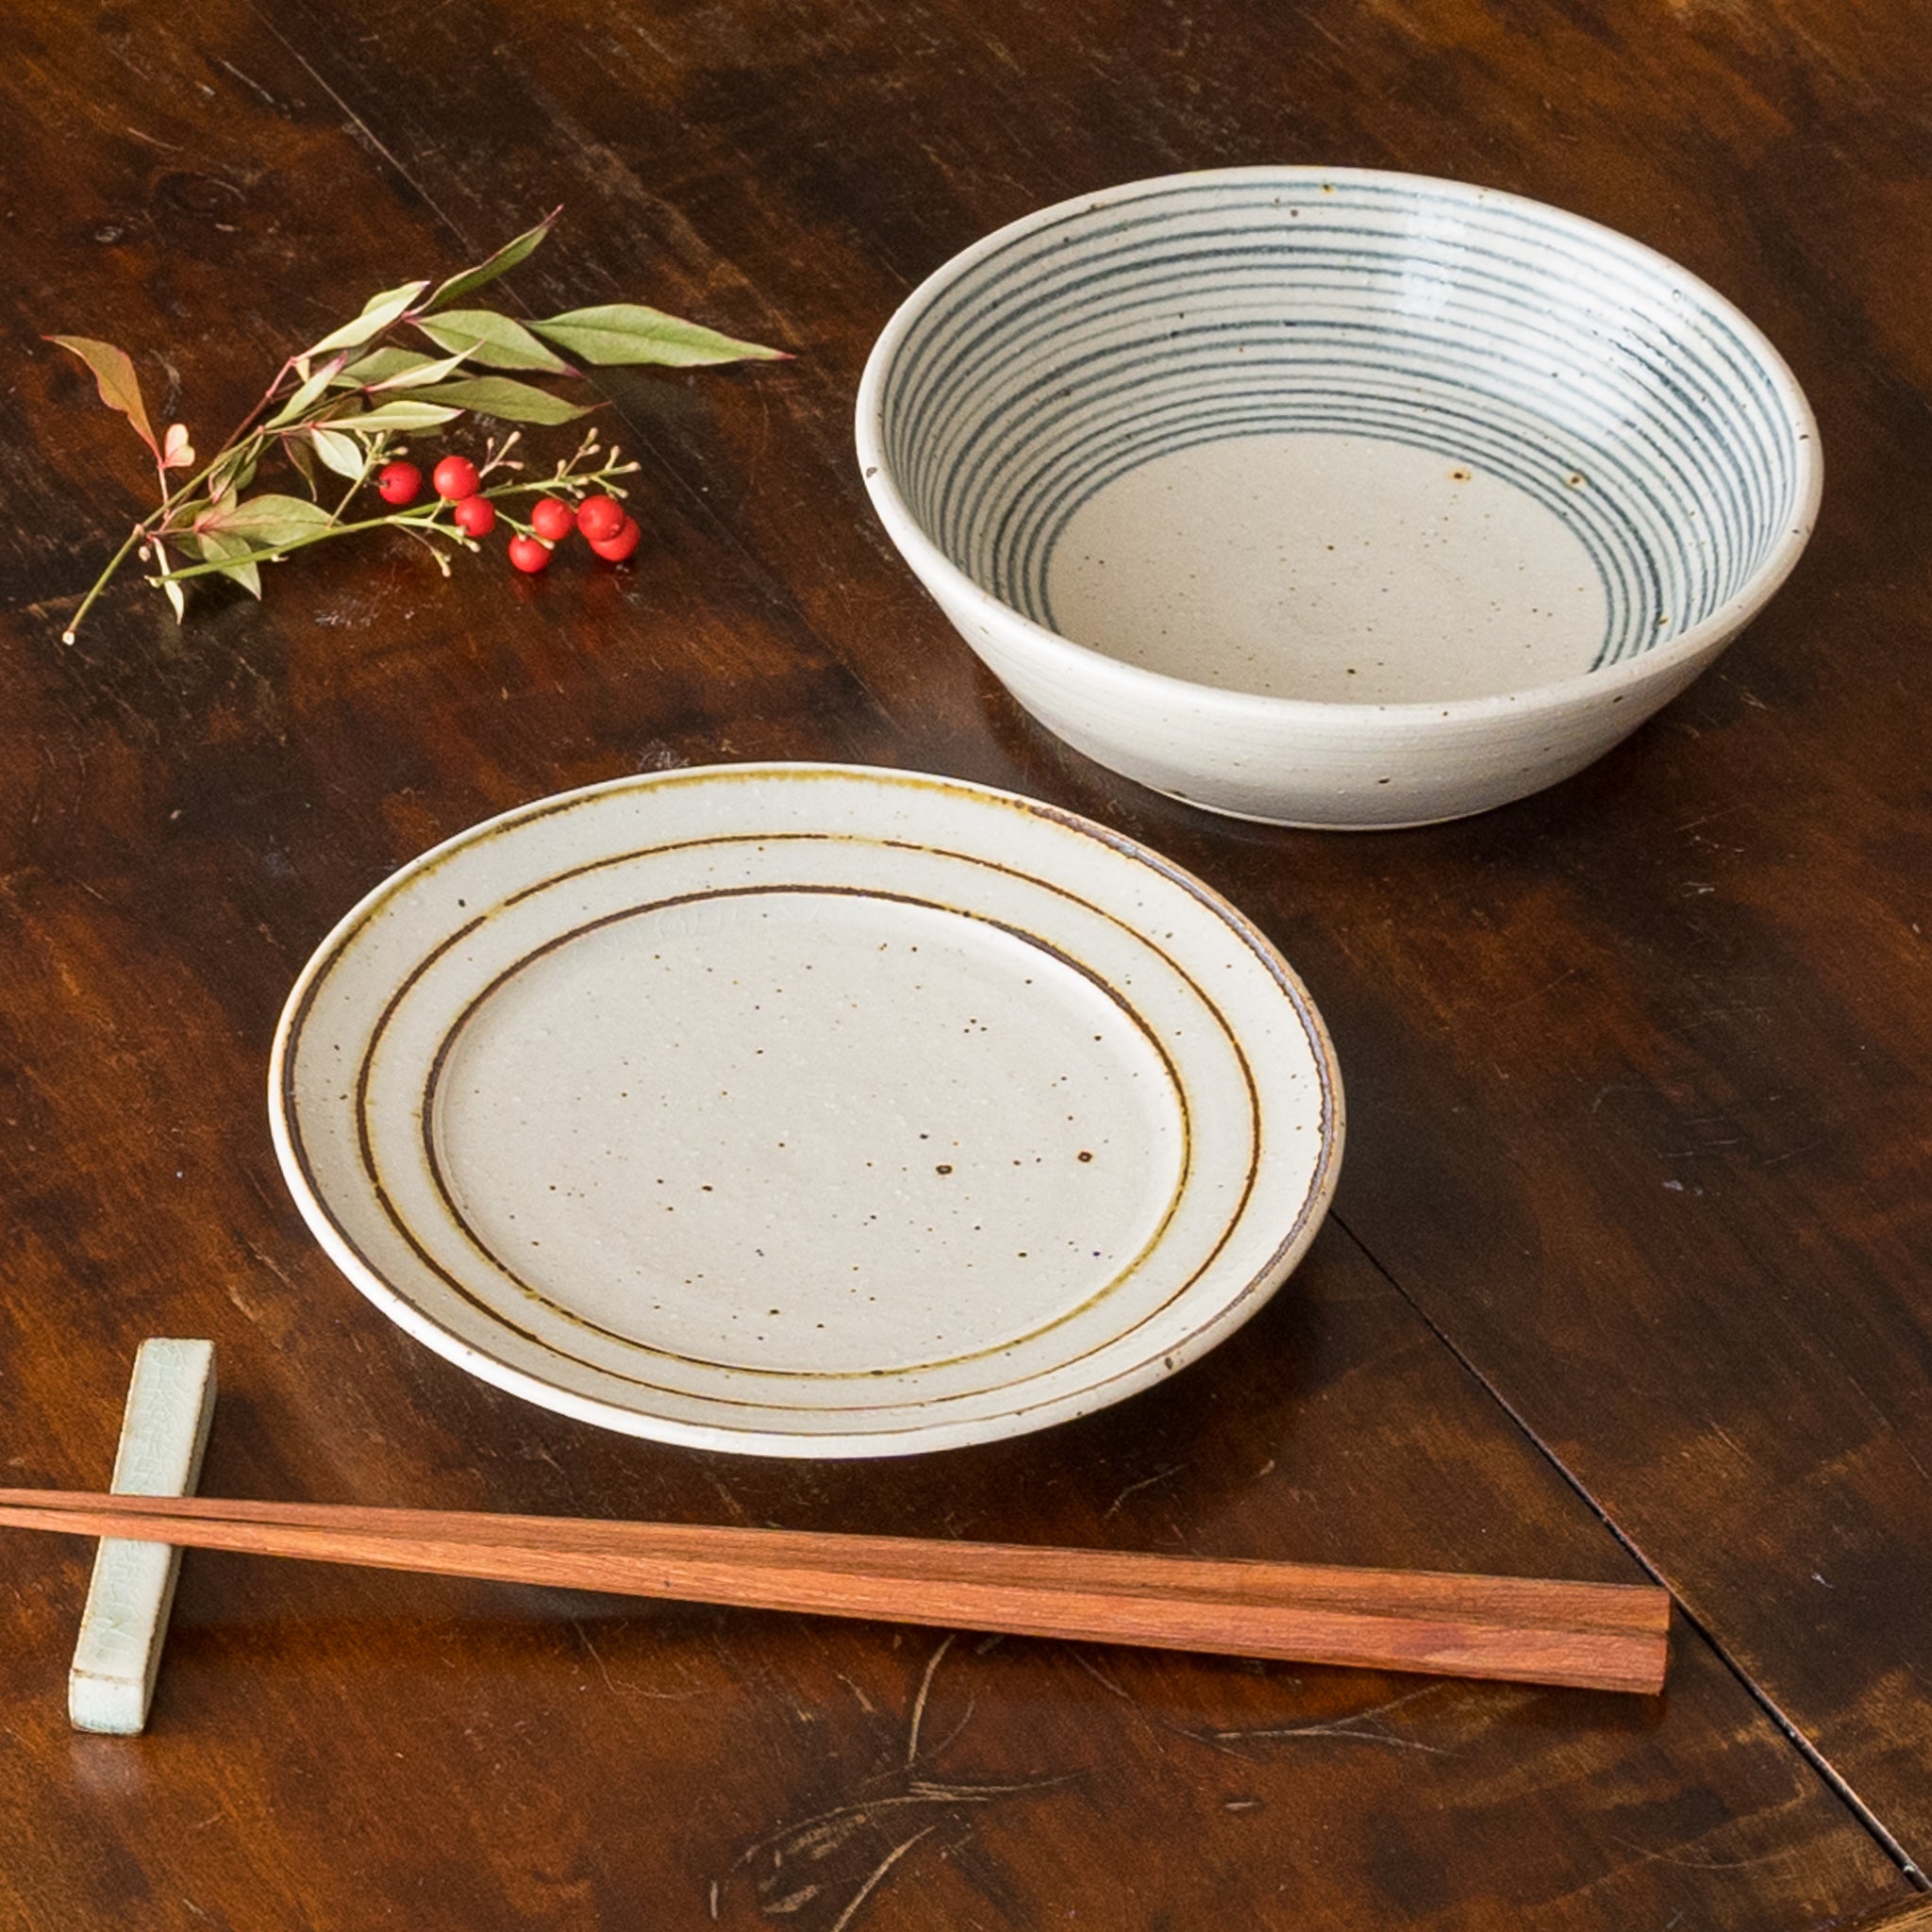 お料理が美しく引き立つ冨本大輔さんの灰釉染付5寸鉢と鉄絵5寸リム皿